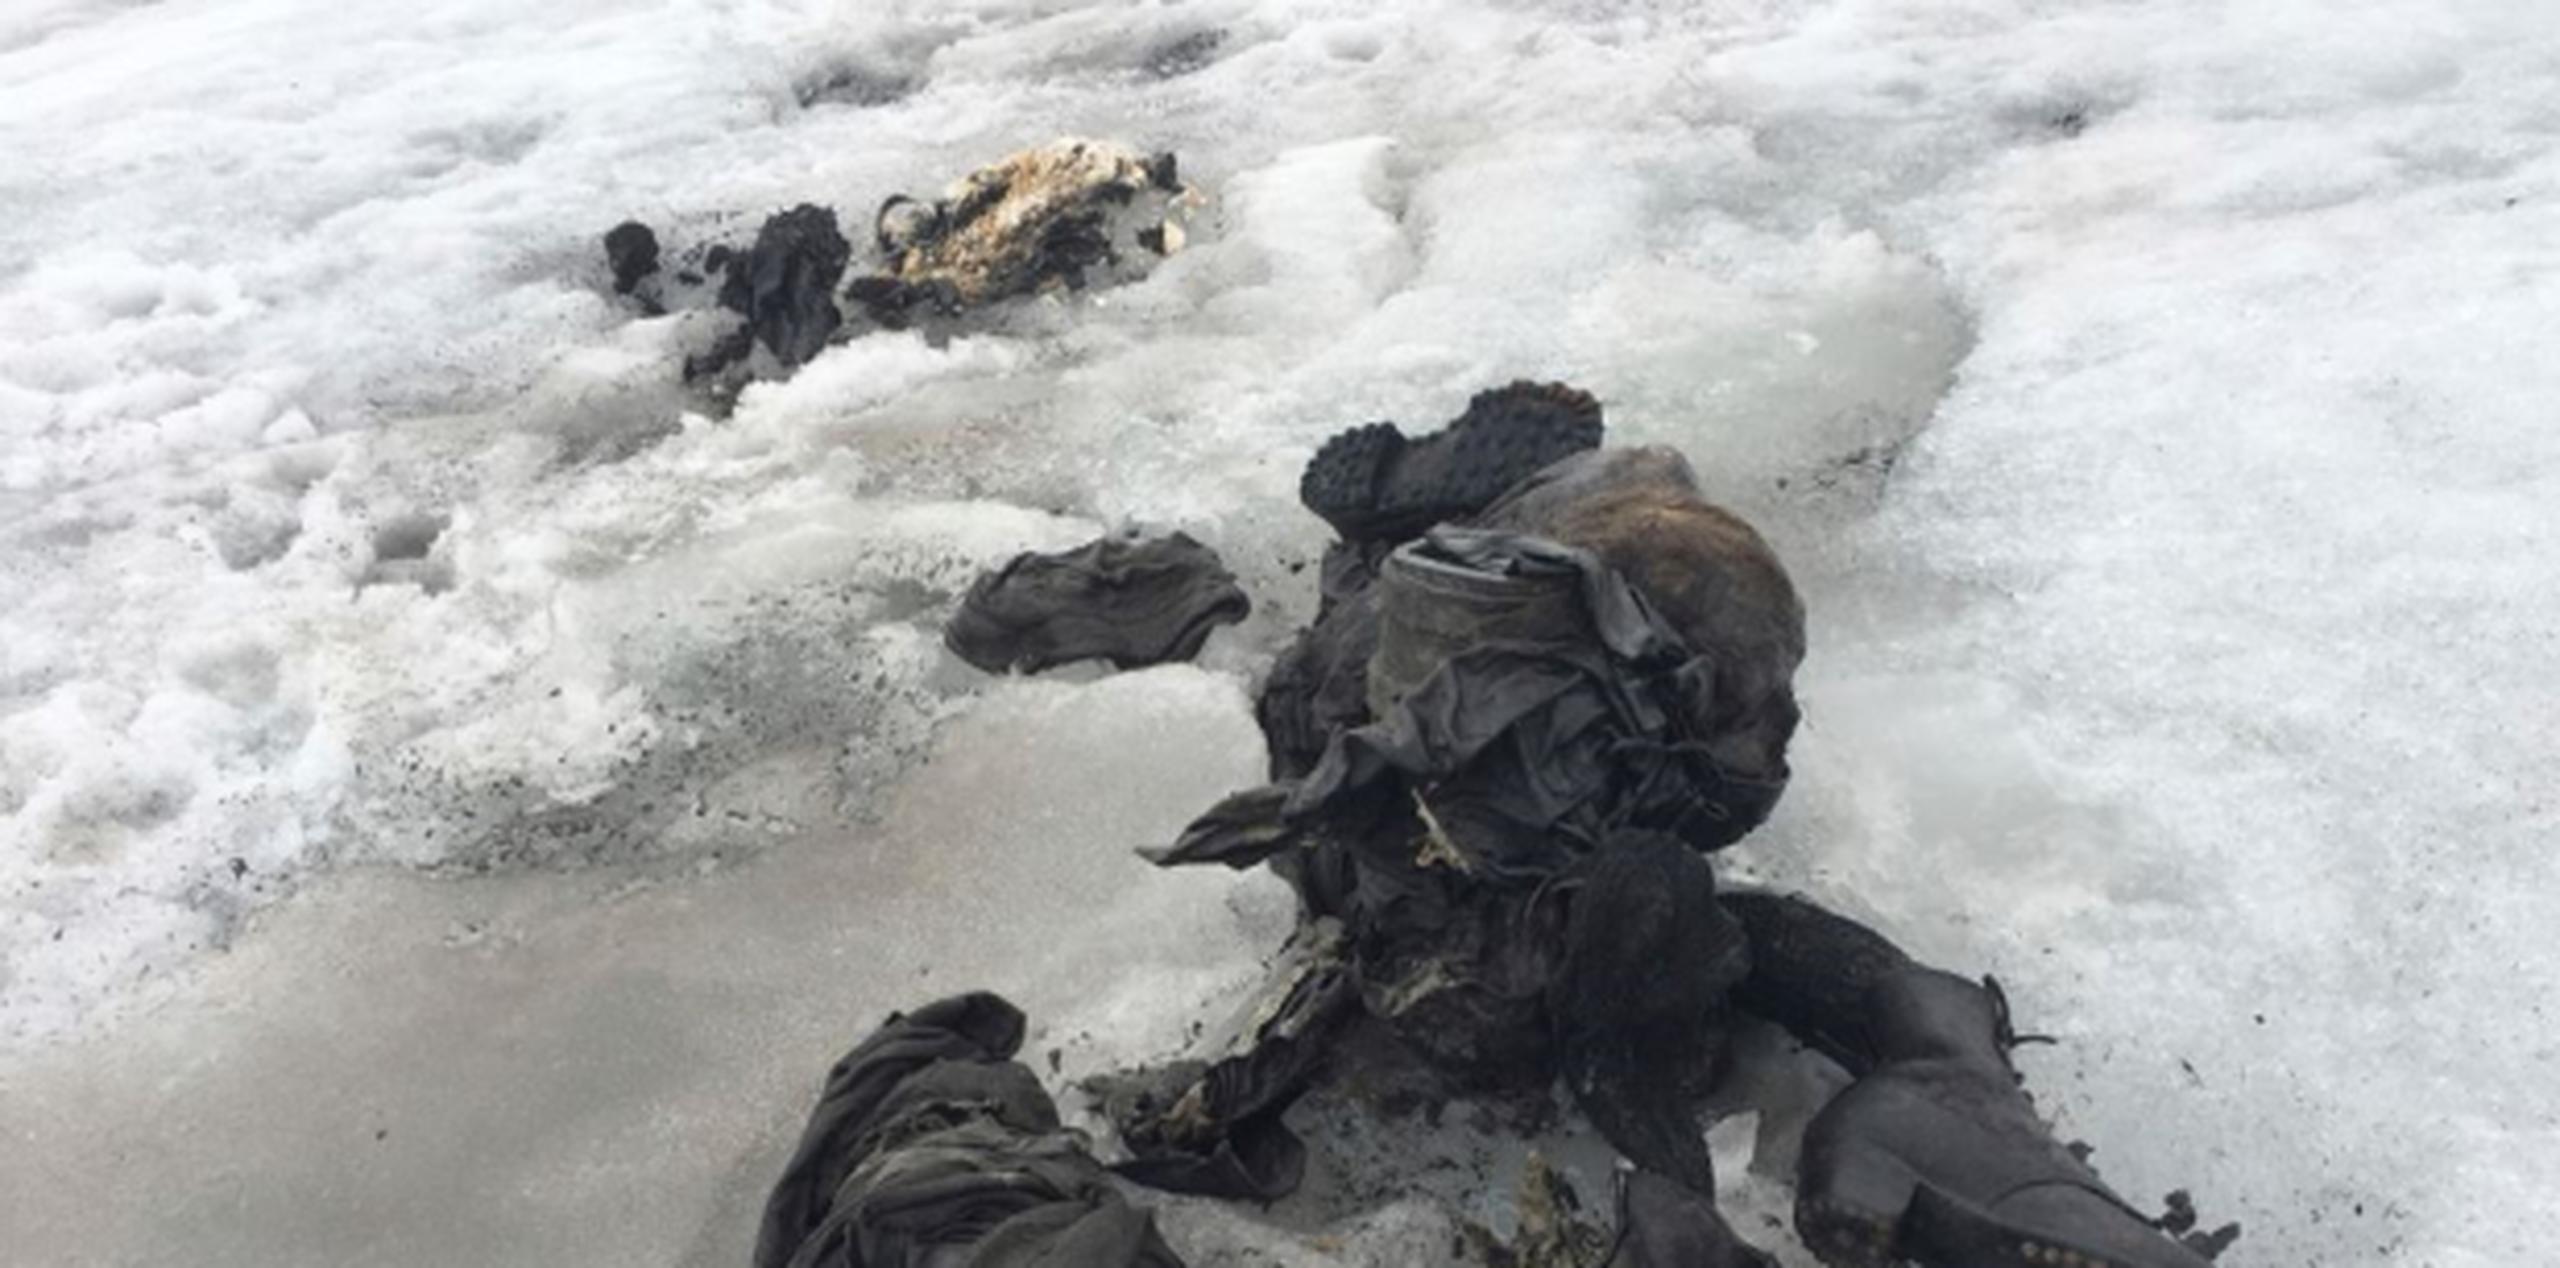 Los cadáveres aparecieron en el glaciar Tsanfleuron a 2,615 metros sobre el nivel del mar. (AP)